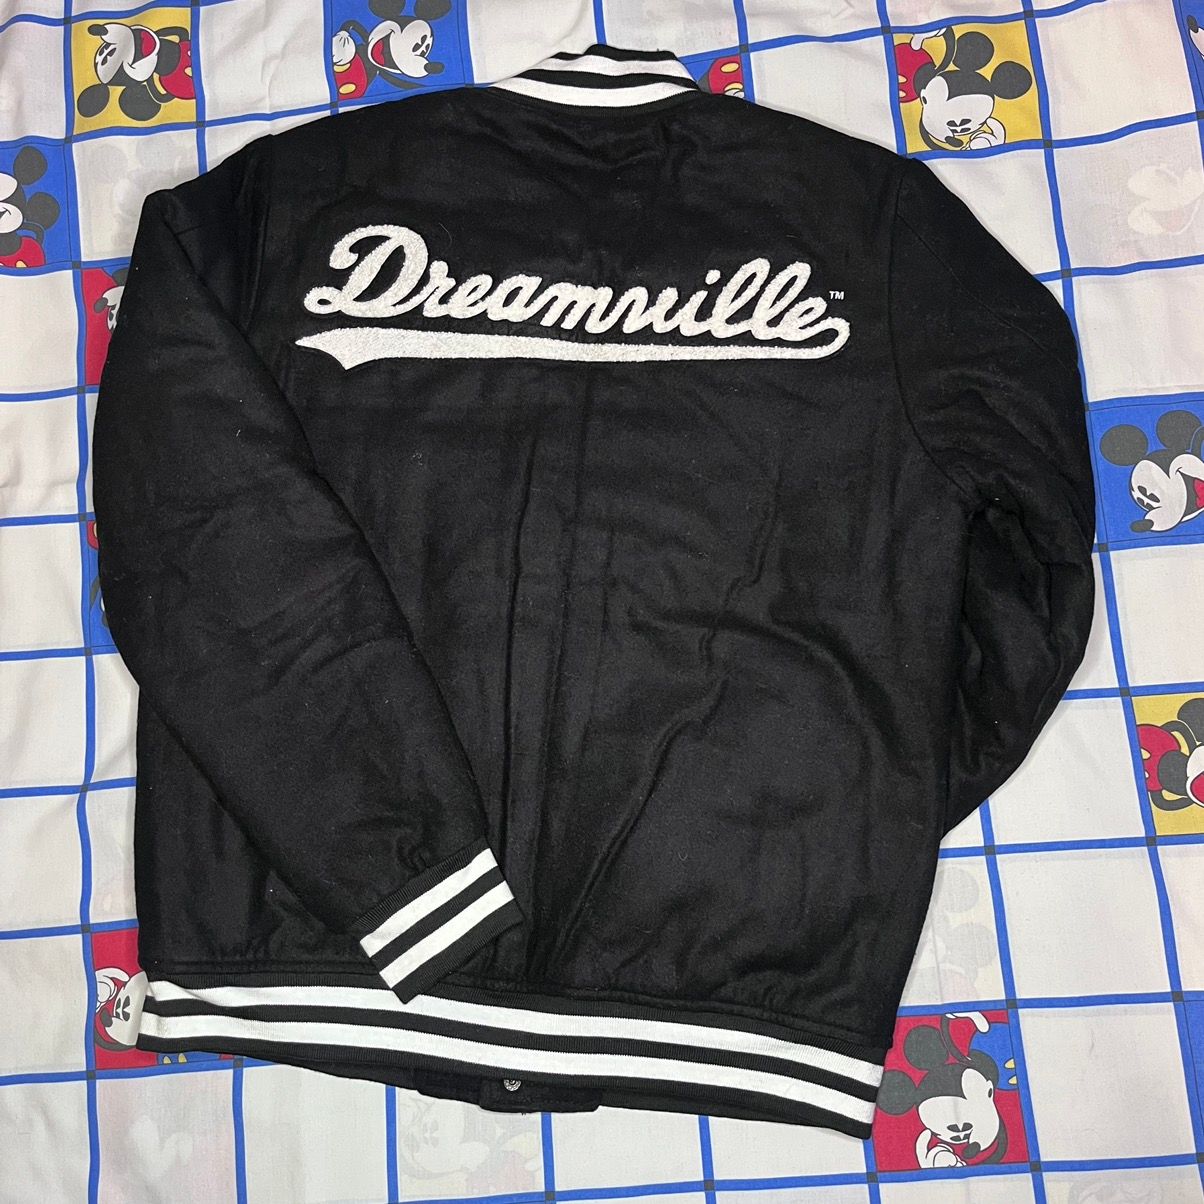 Dreamville RARE J. Cole Dreamville Rap Varsity Bomber Jacket Size US M / EU 48-50 / 2 - 1 Preview